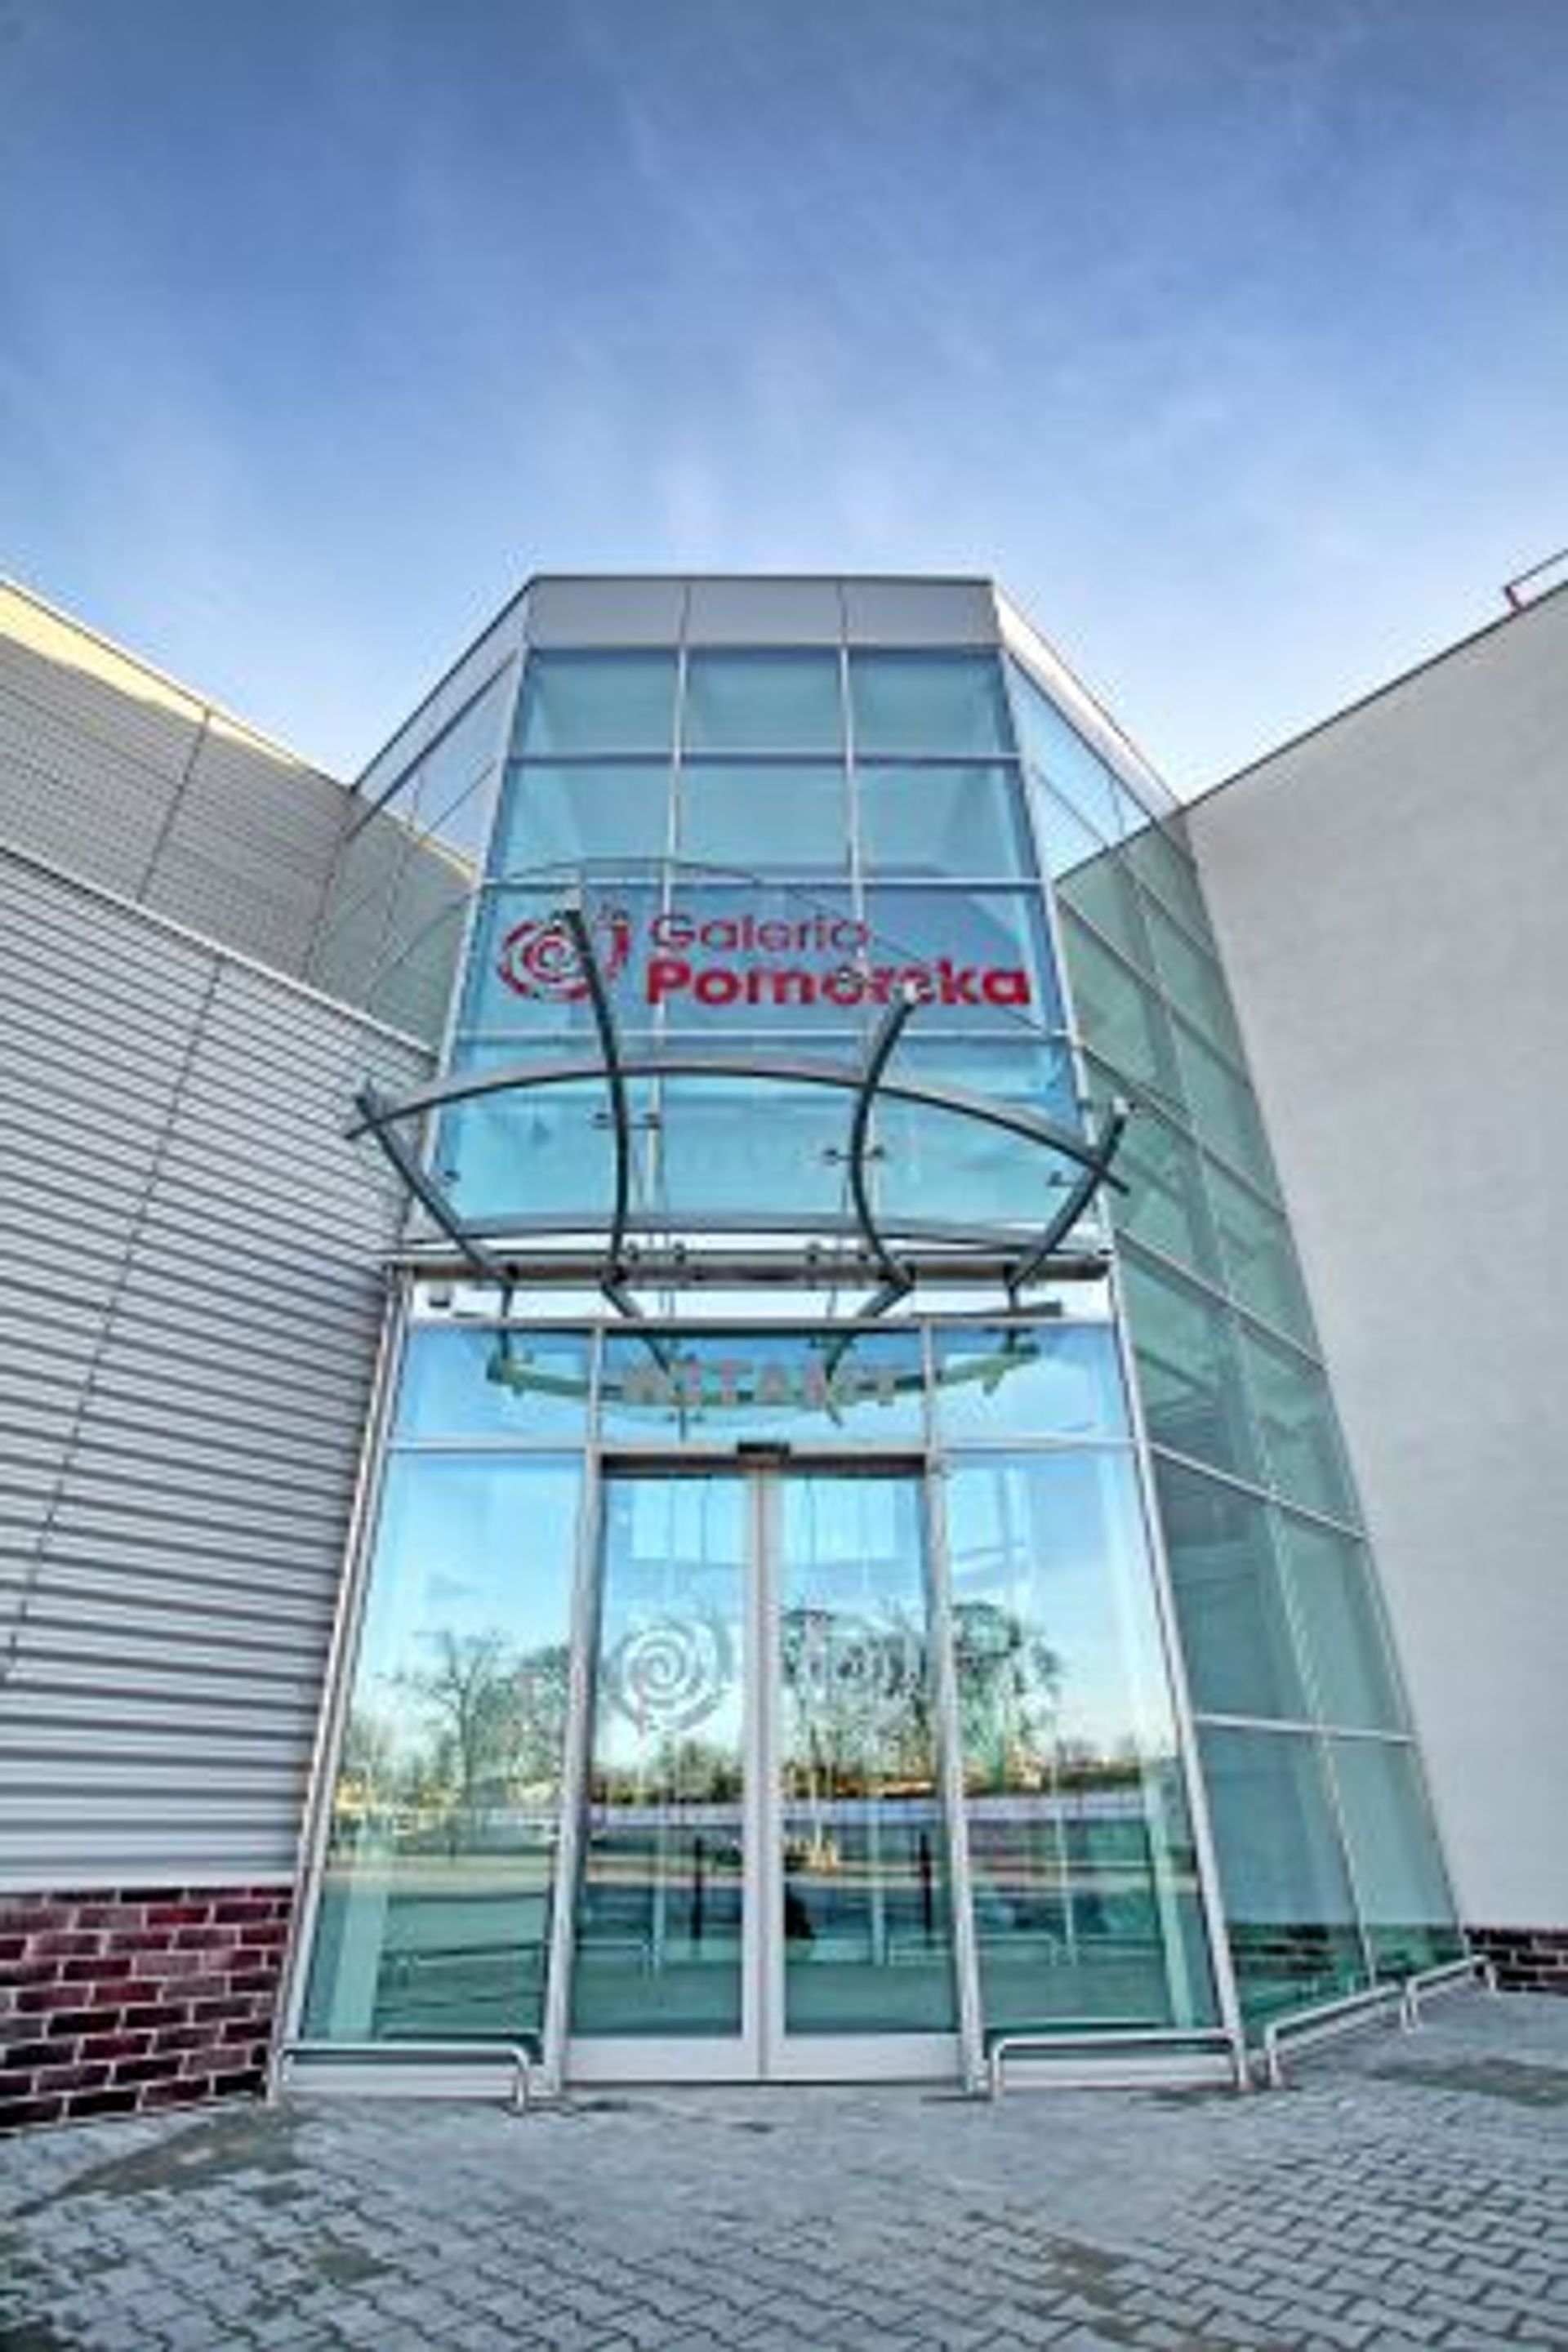  Galeria Pomorska z nowym parkingiem i wejściem